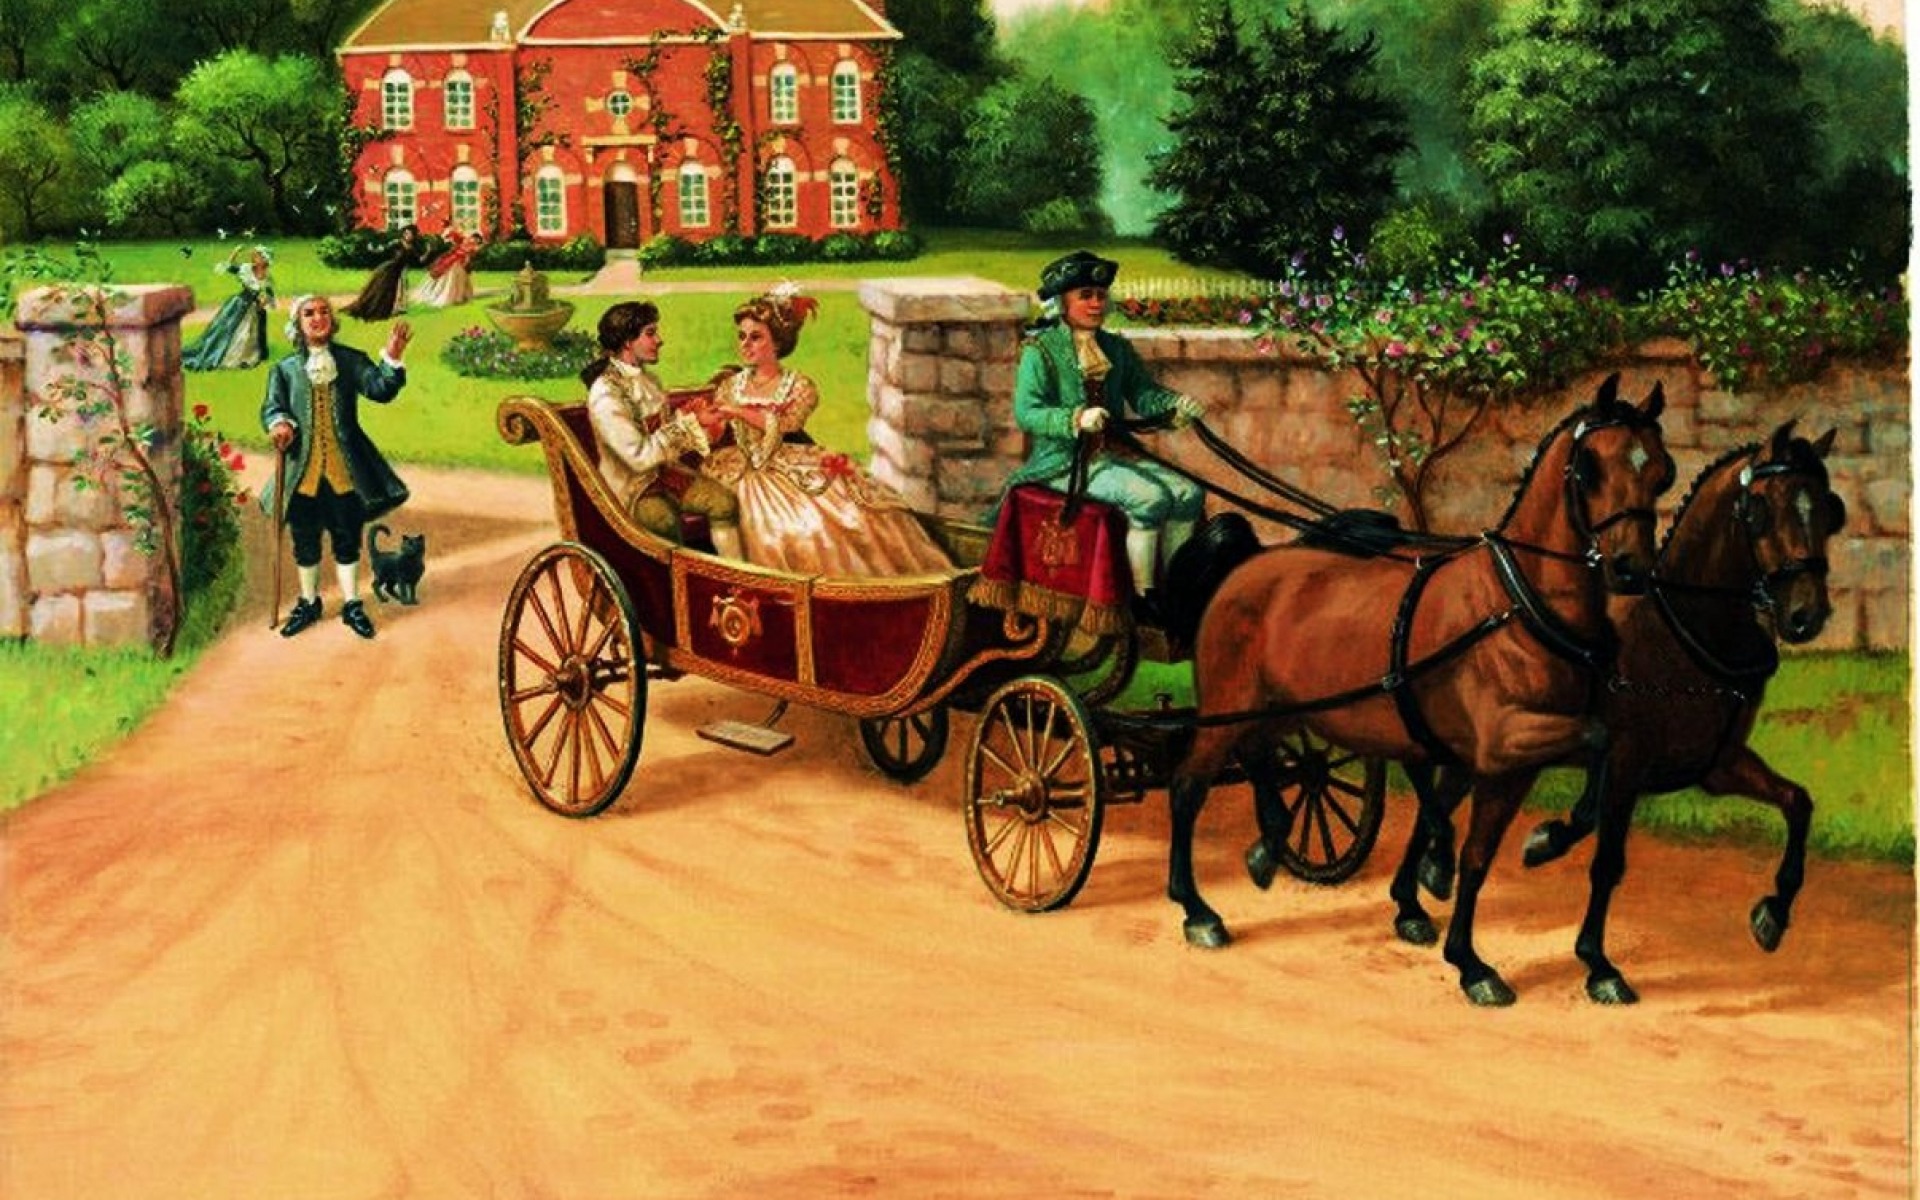 Телеги запряженные лошадьми двигались на ярмарку. Золушка иллюстрации рут Сандерсон. Рут Сандерсон Золушка. Сандерсон Руф "Золушка". Кучер 19 века.